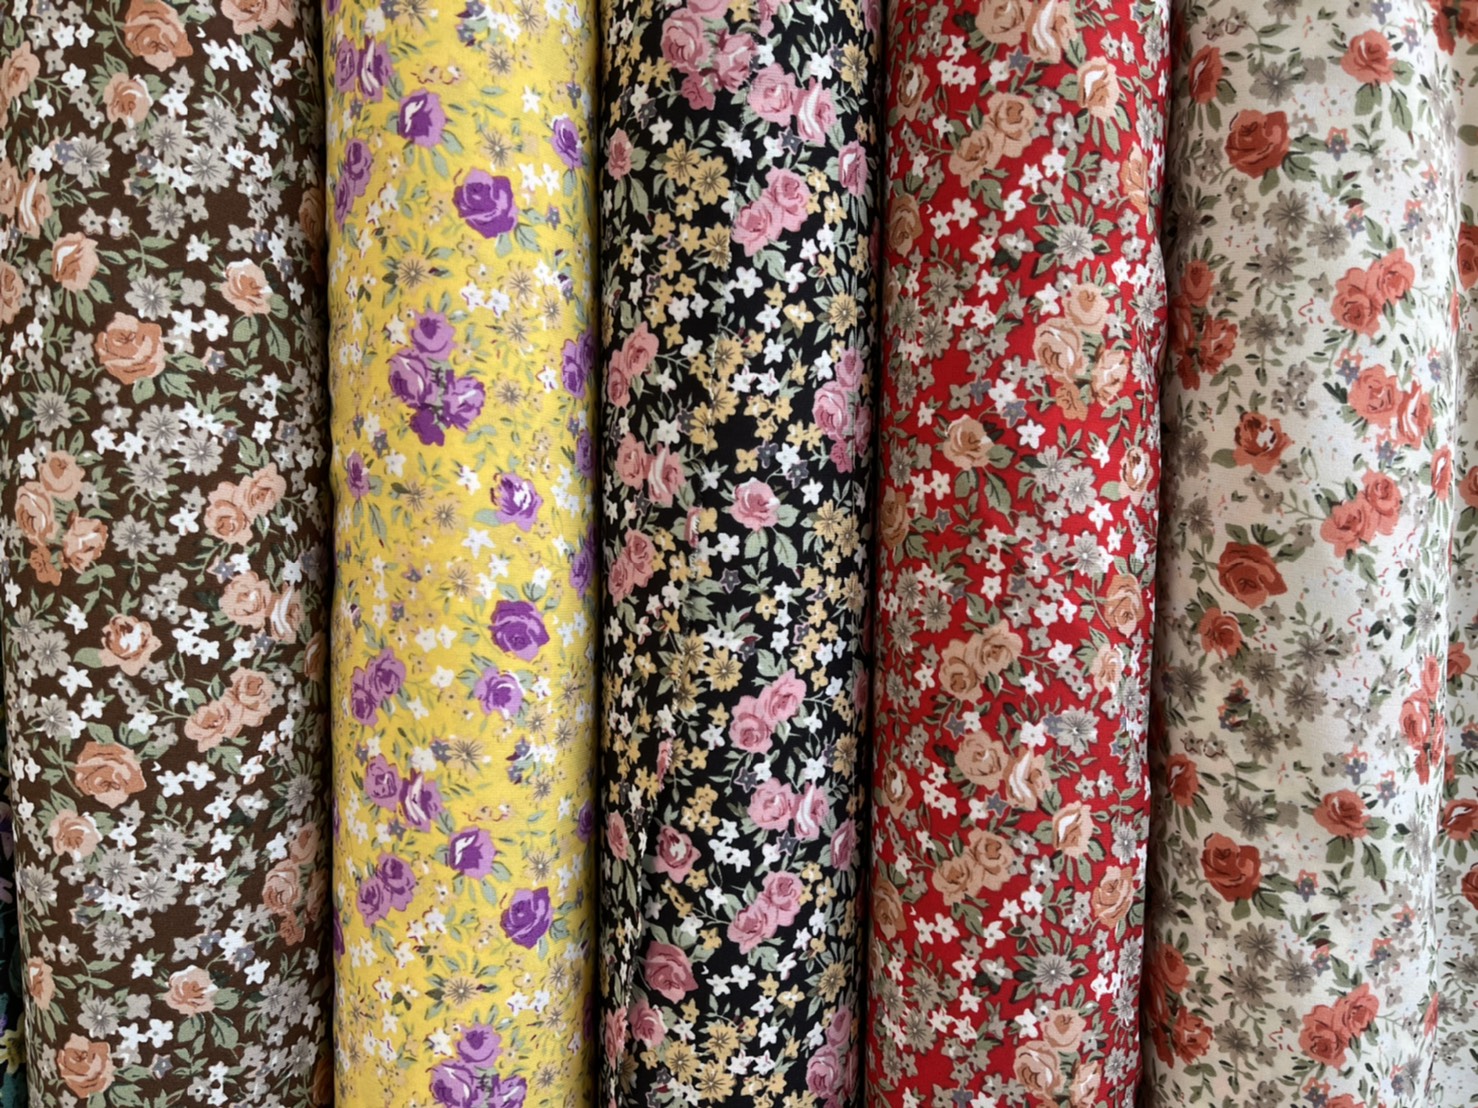 ผ้าเมตร ผ้าจอเจียญี่ปุ่น ผ้าเครปชีฟอง ผ้าพีชสกรีน ผ้าเครปชีฟองลายดอก ผ้าดอก ลายใหม่ ชุดที่4 หน้ากว้าง 45 นิ้ว หน่วยขายเป็นเมตร